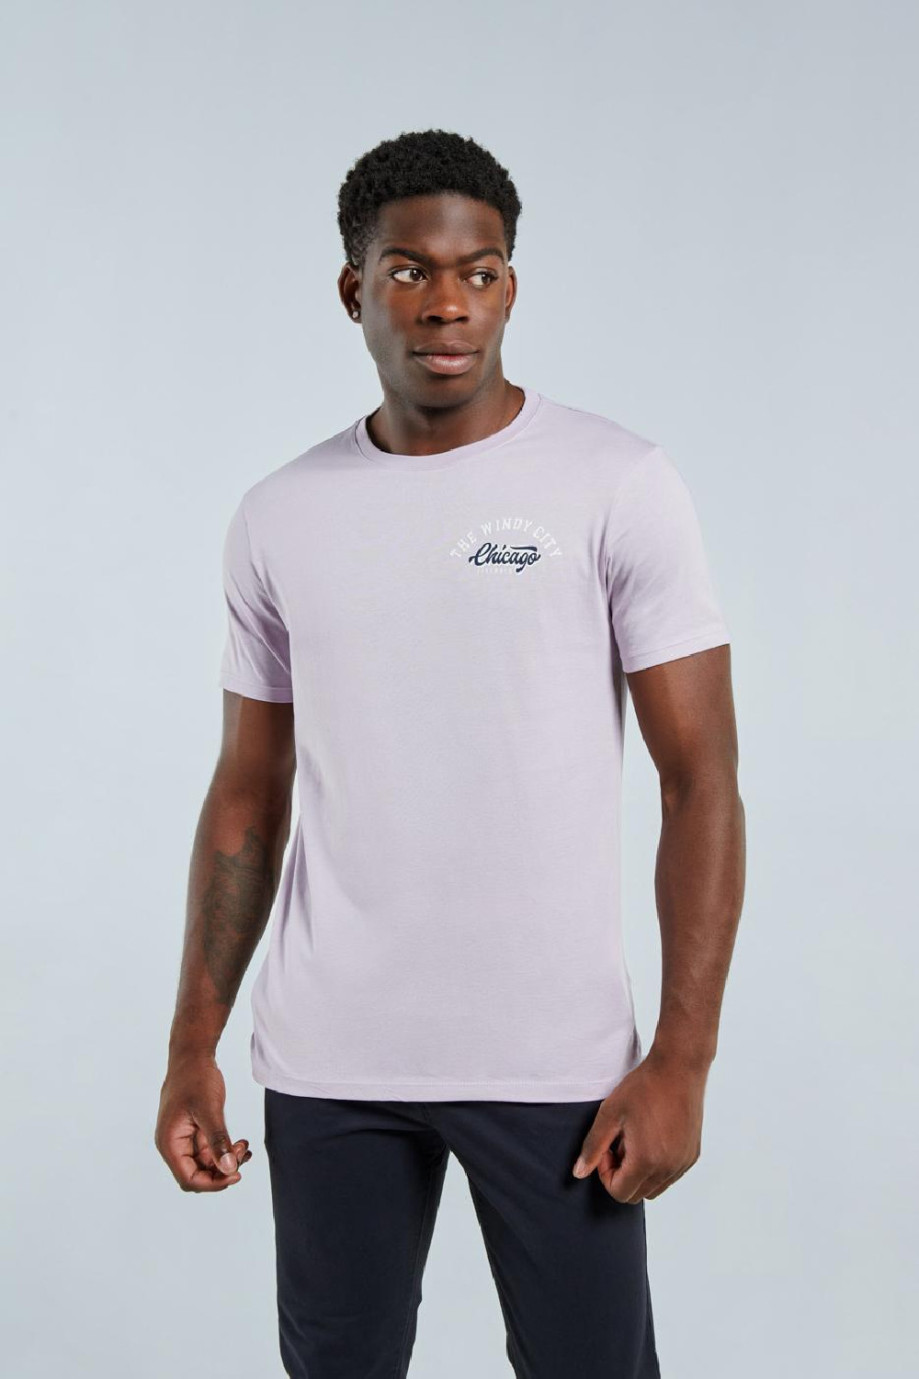 Camiseta lila clara con manga corta y diseño college minimalista de Chicago